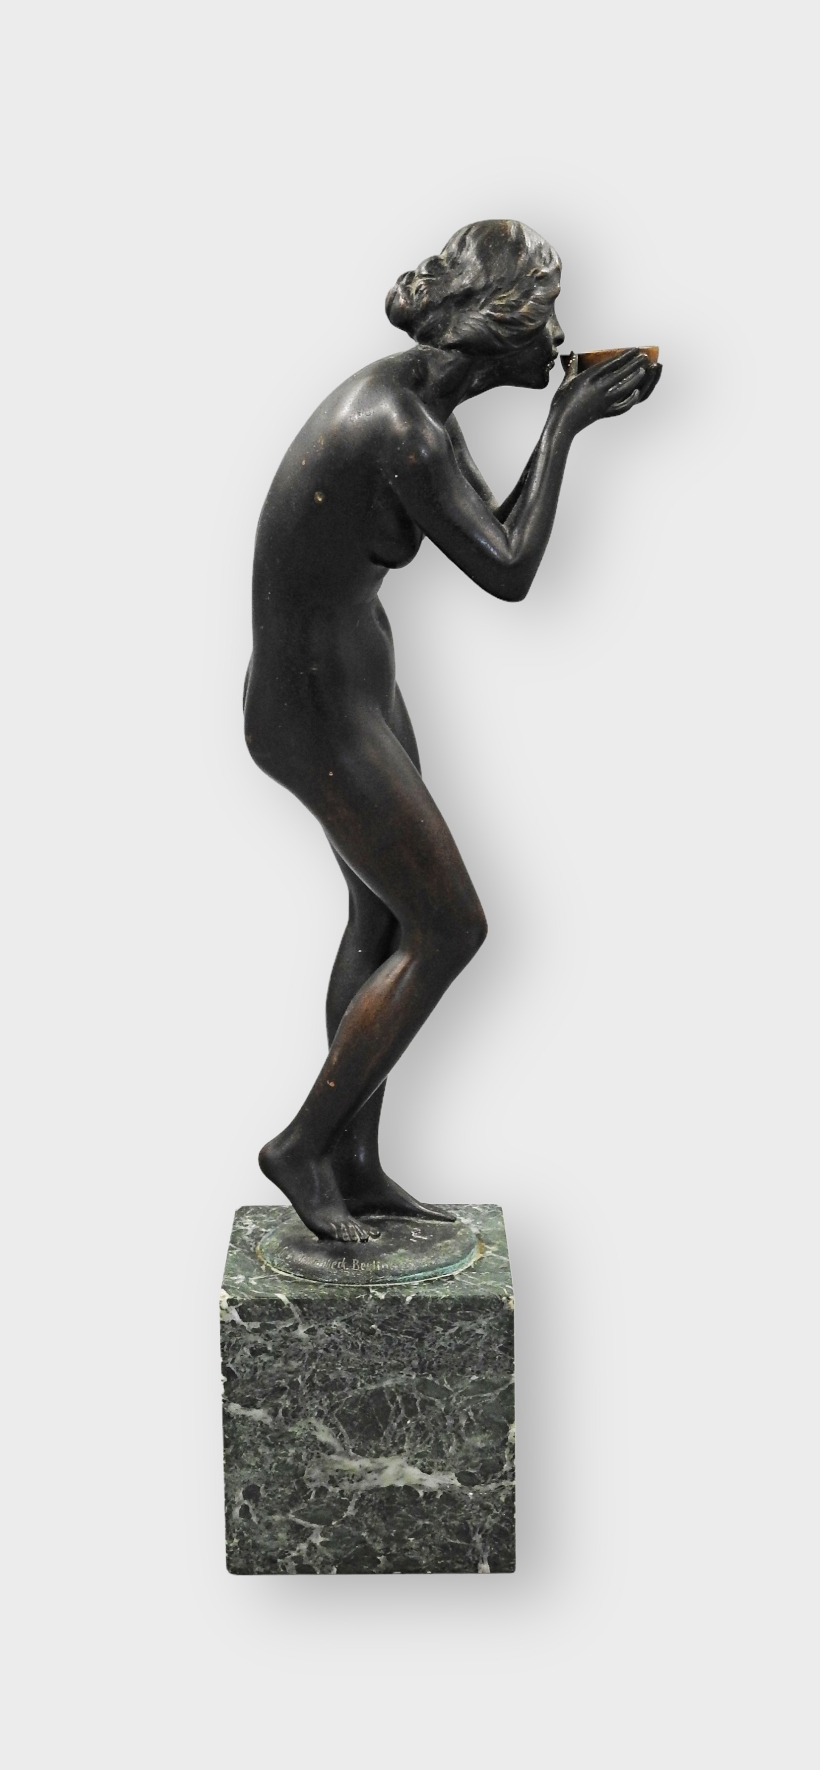 Artwork by Victor Heinrich Seifert, Anmutige Bronzestatuette „Die Trinkende“, Made of bronze